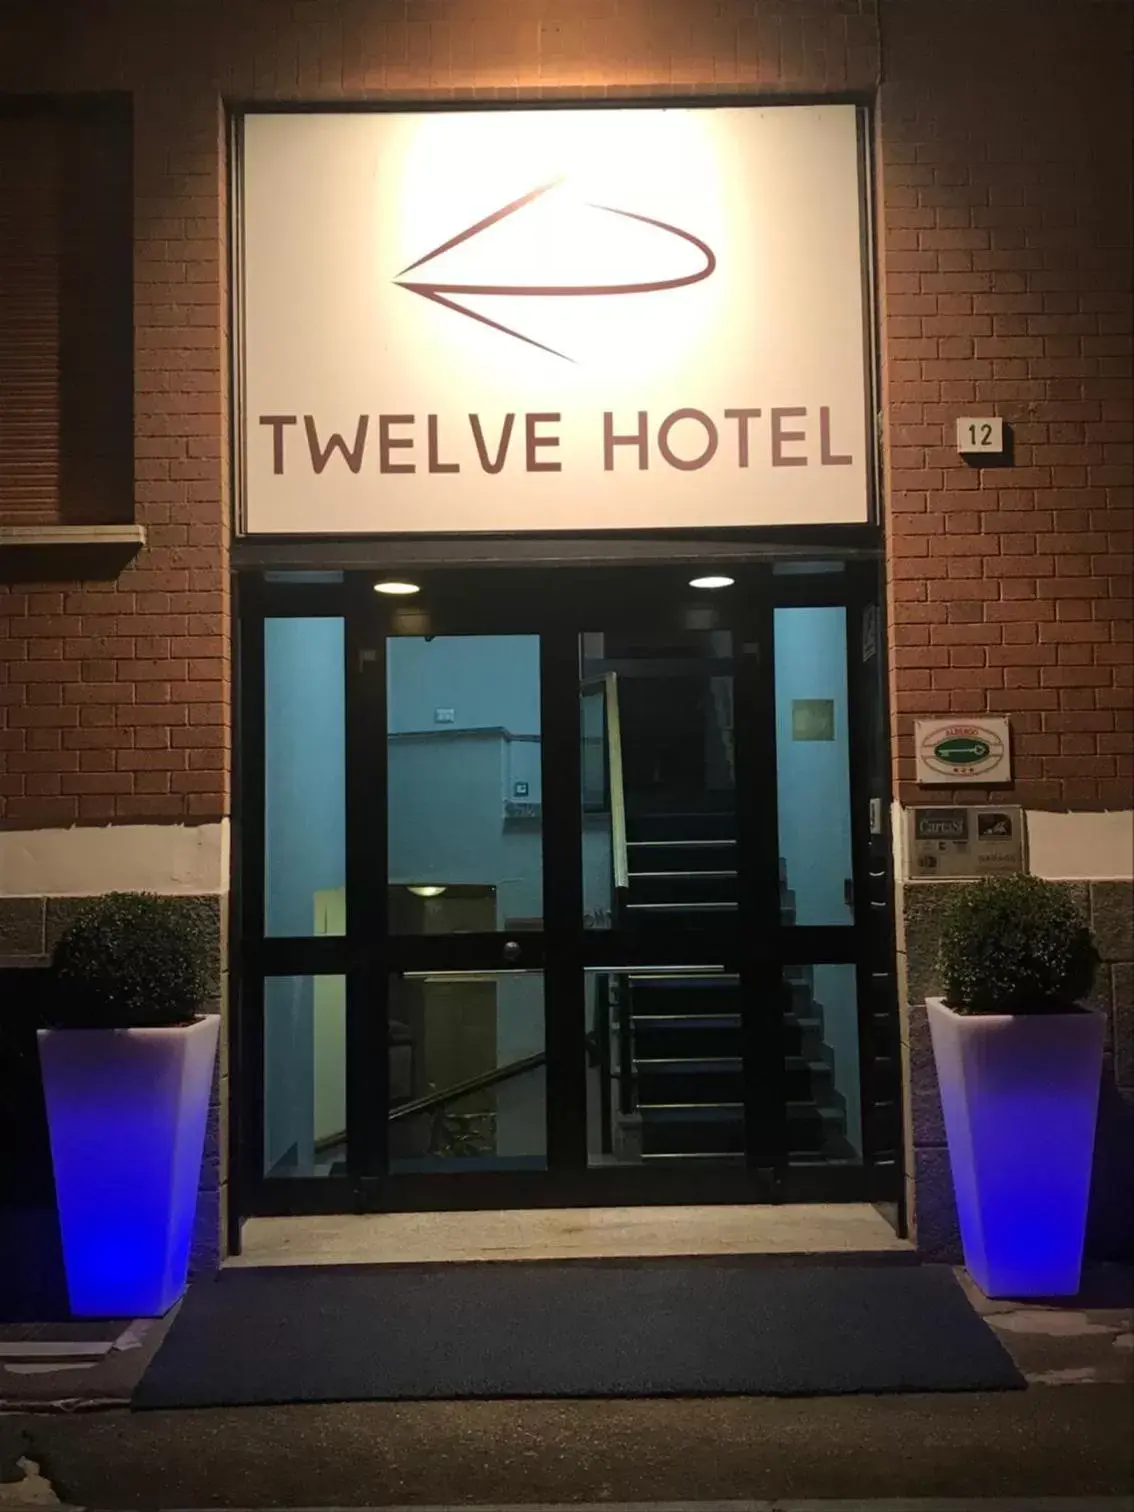 Property logo or sign in Twelve Hotel